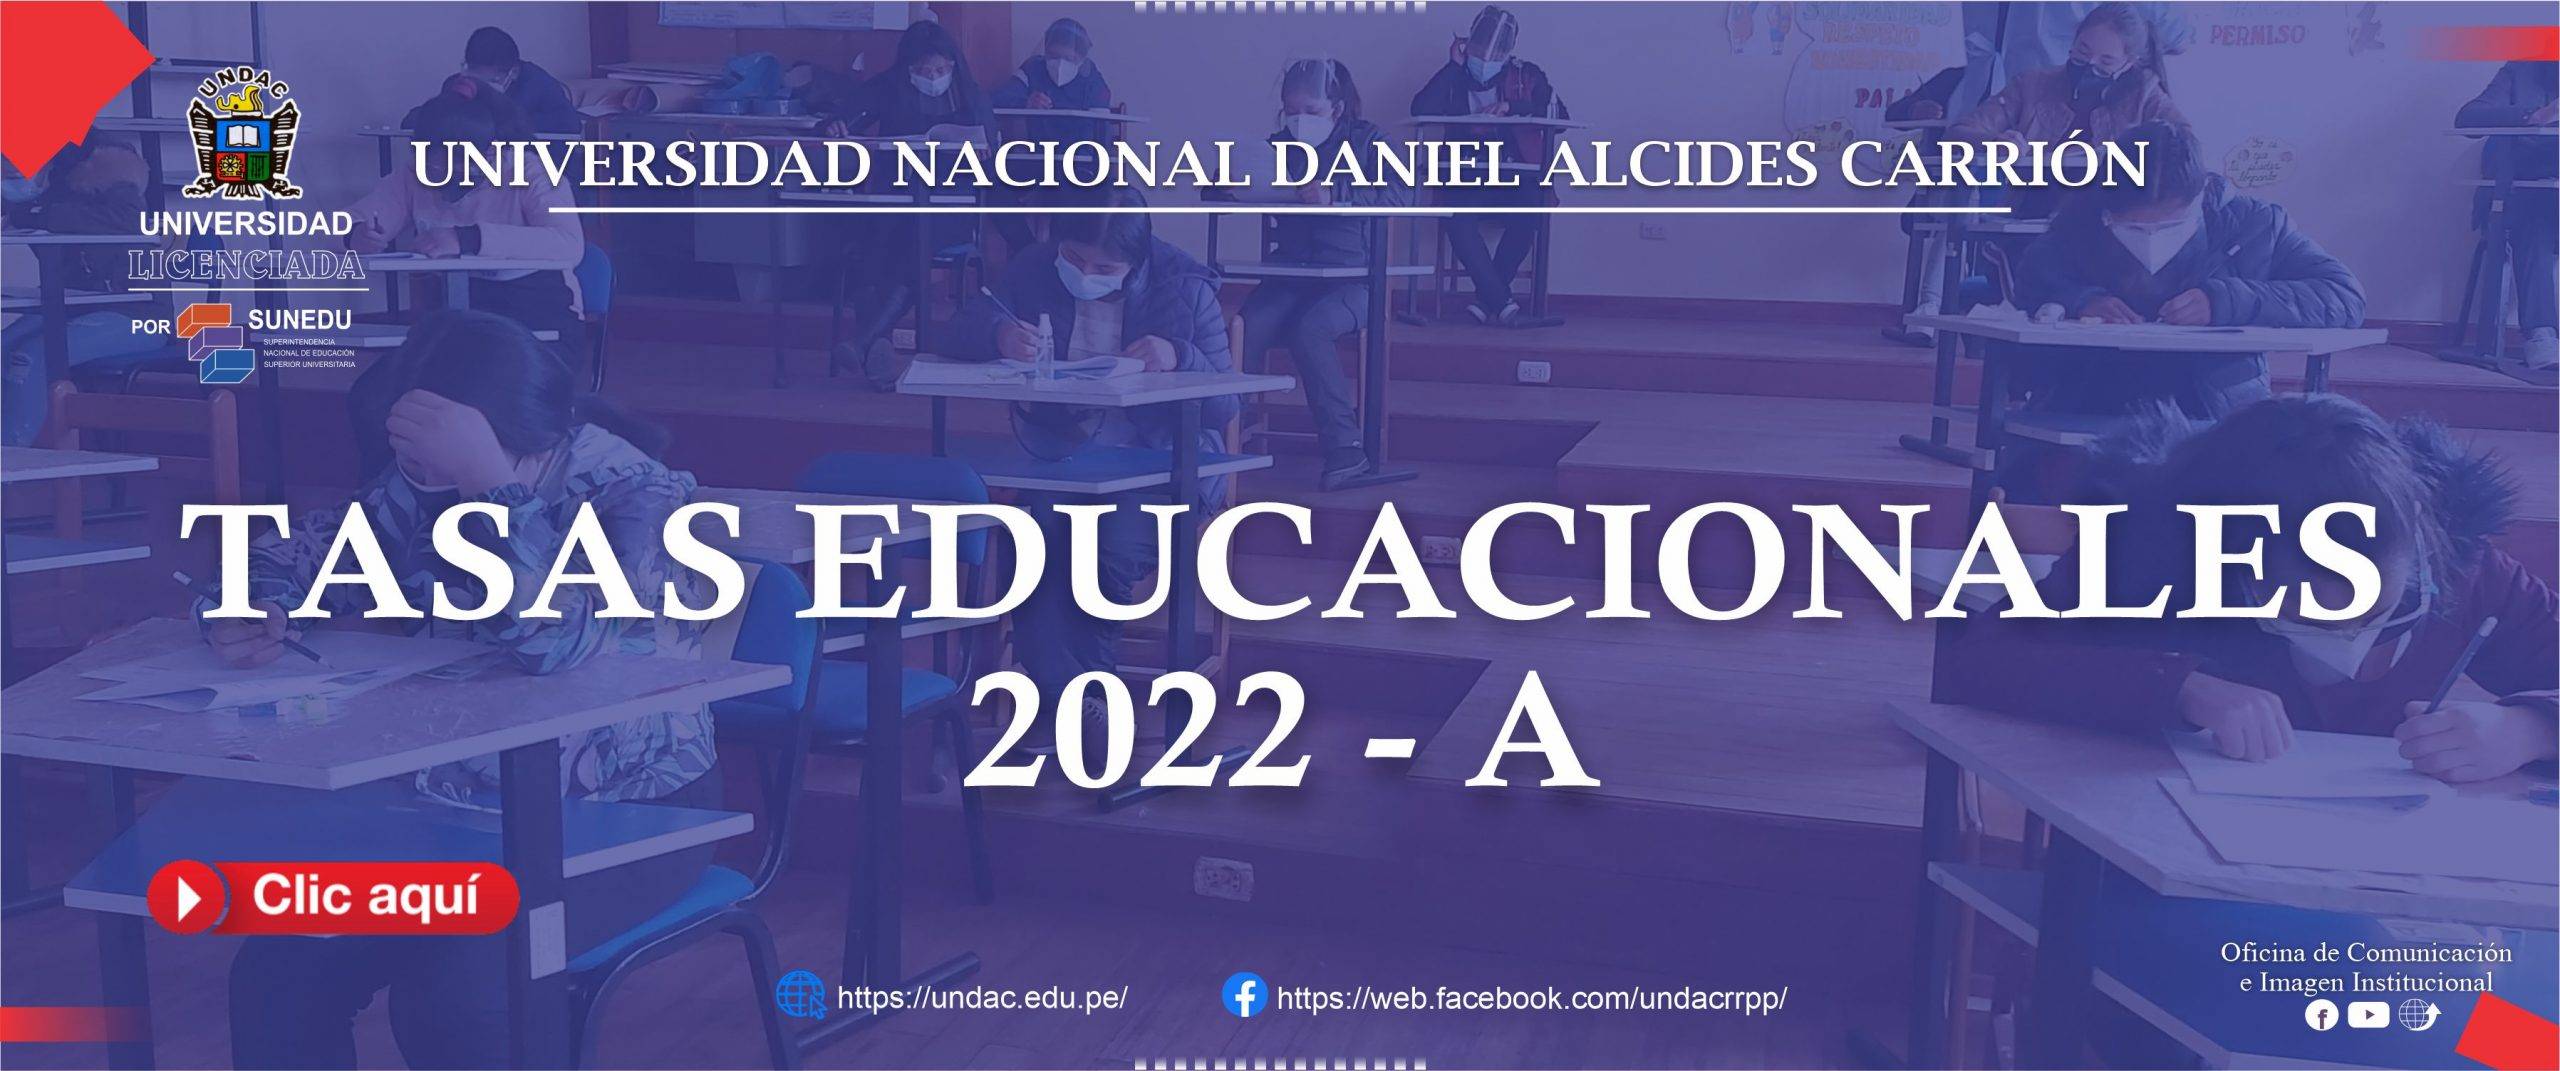 TASAS EDUCACIONALES 2022-A